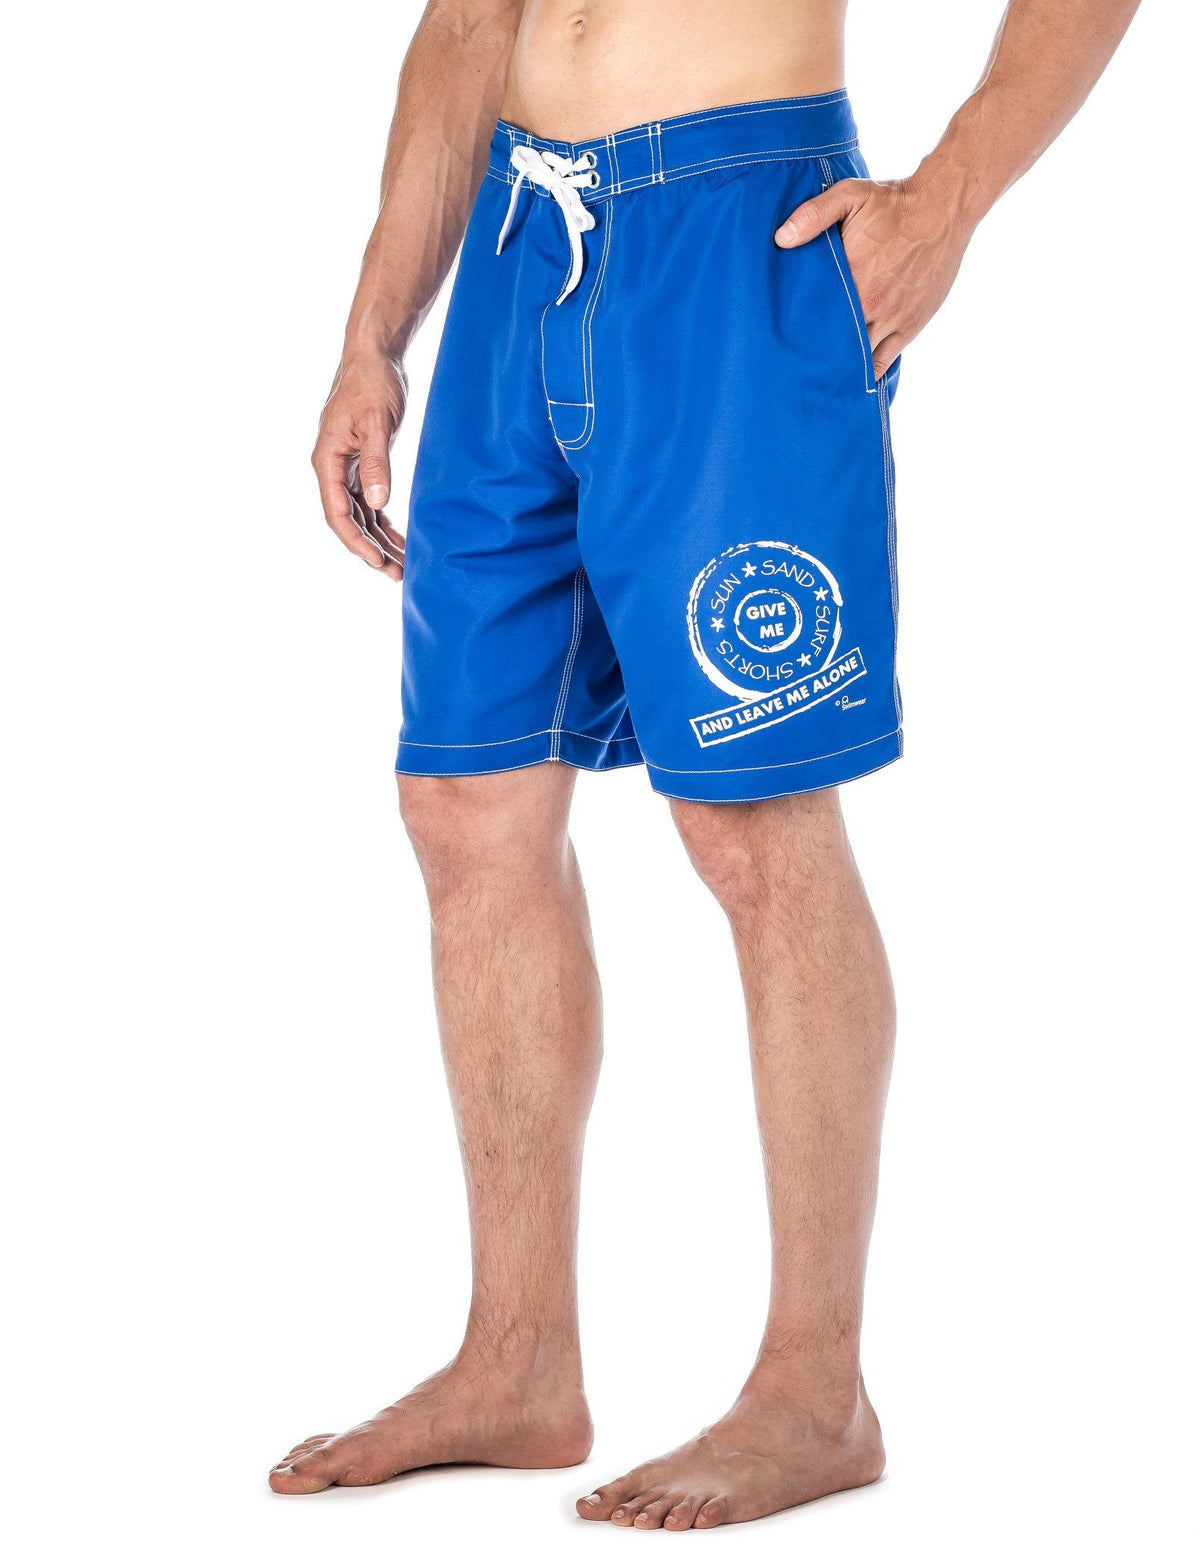 Men's Premium Swim Boardshorts - With Beach Attitude Stamps - Leave me Alone - Blue/White